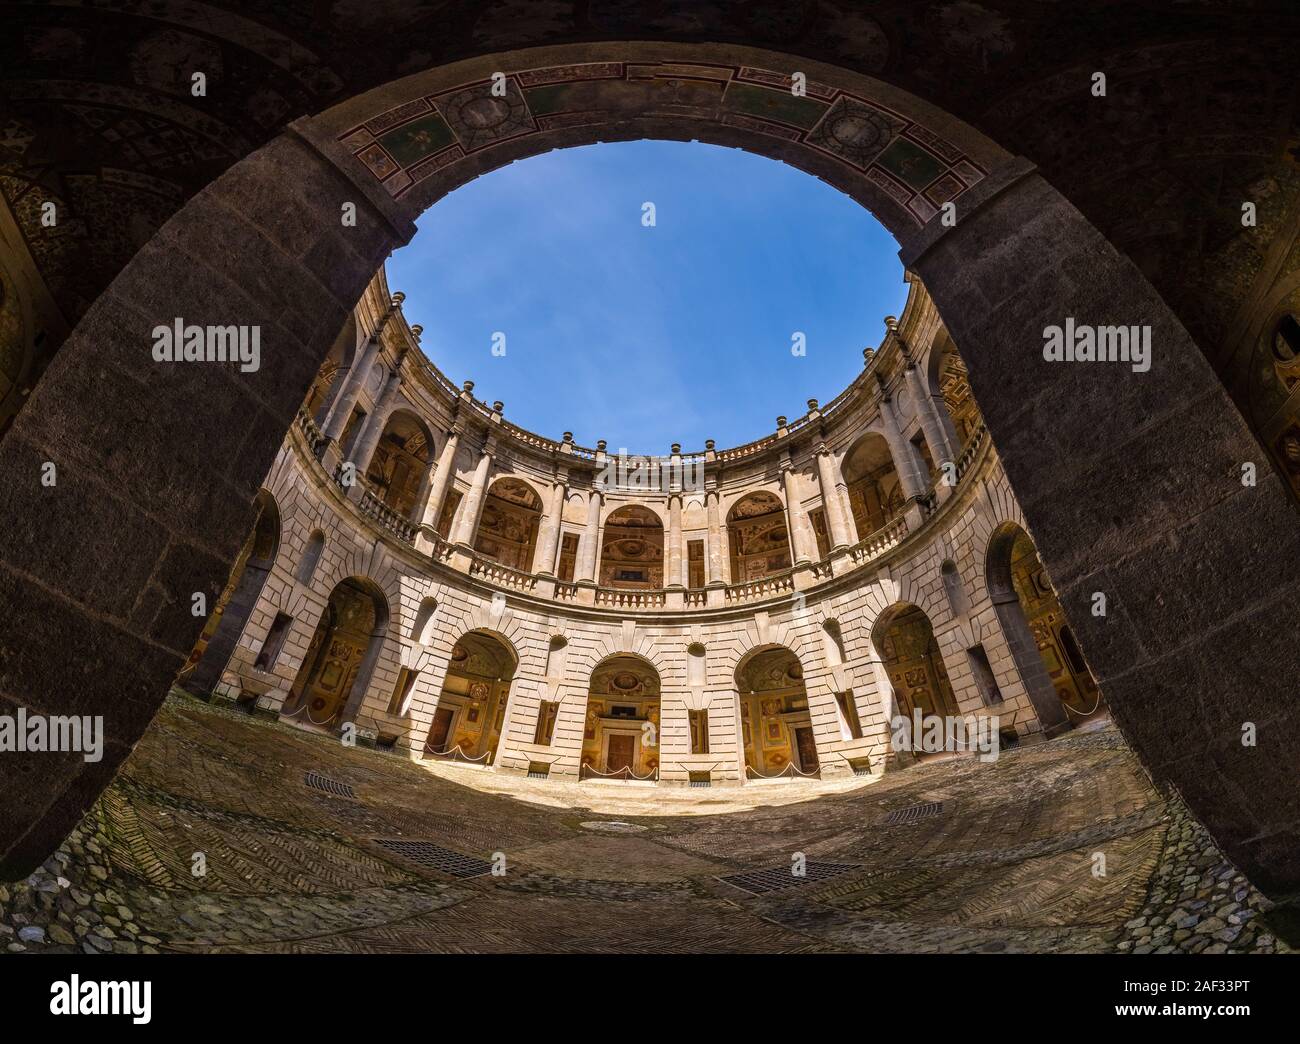 Vista panoramica della circolare del cortile interno di Villa Farnese, nota anche come Villa Caprarola, una massiccia costruzione rinascimentale Foto Stock